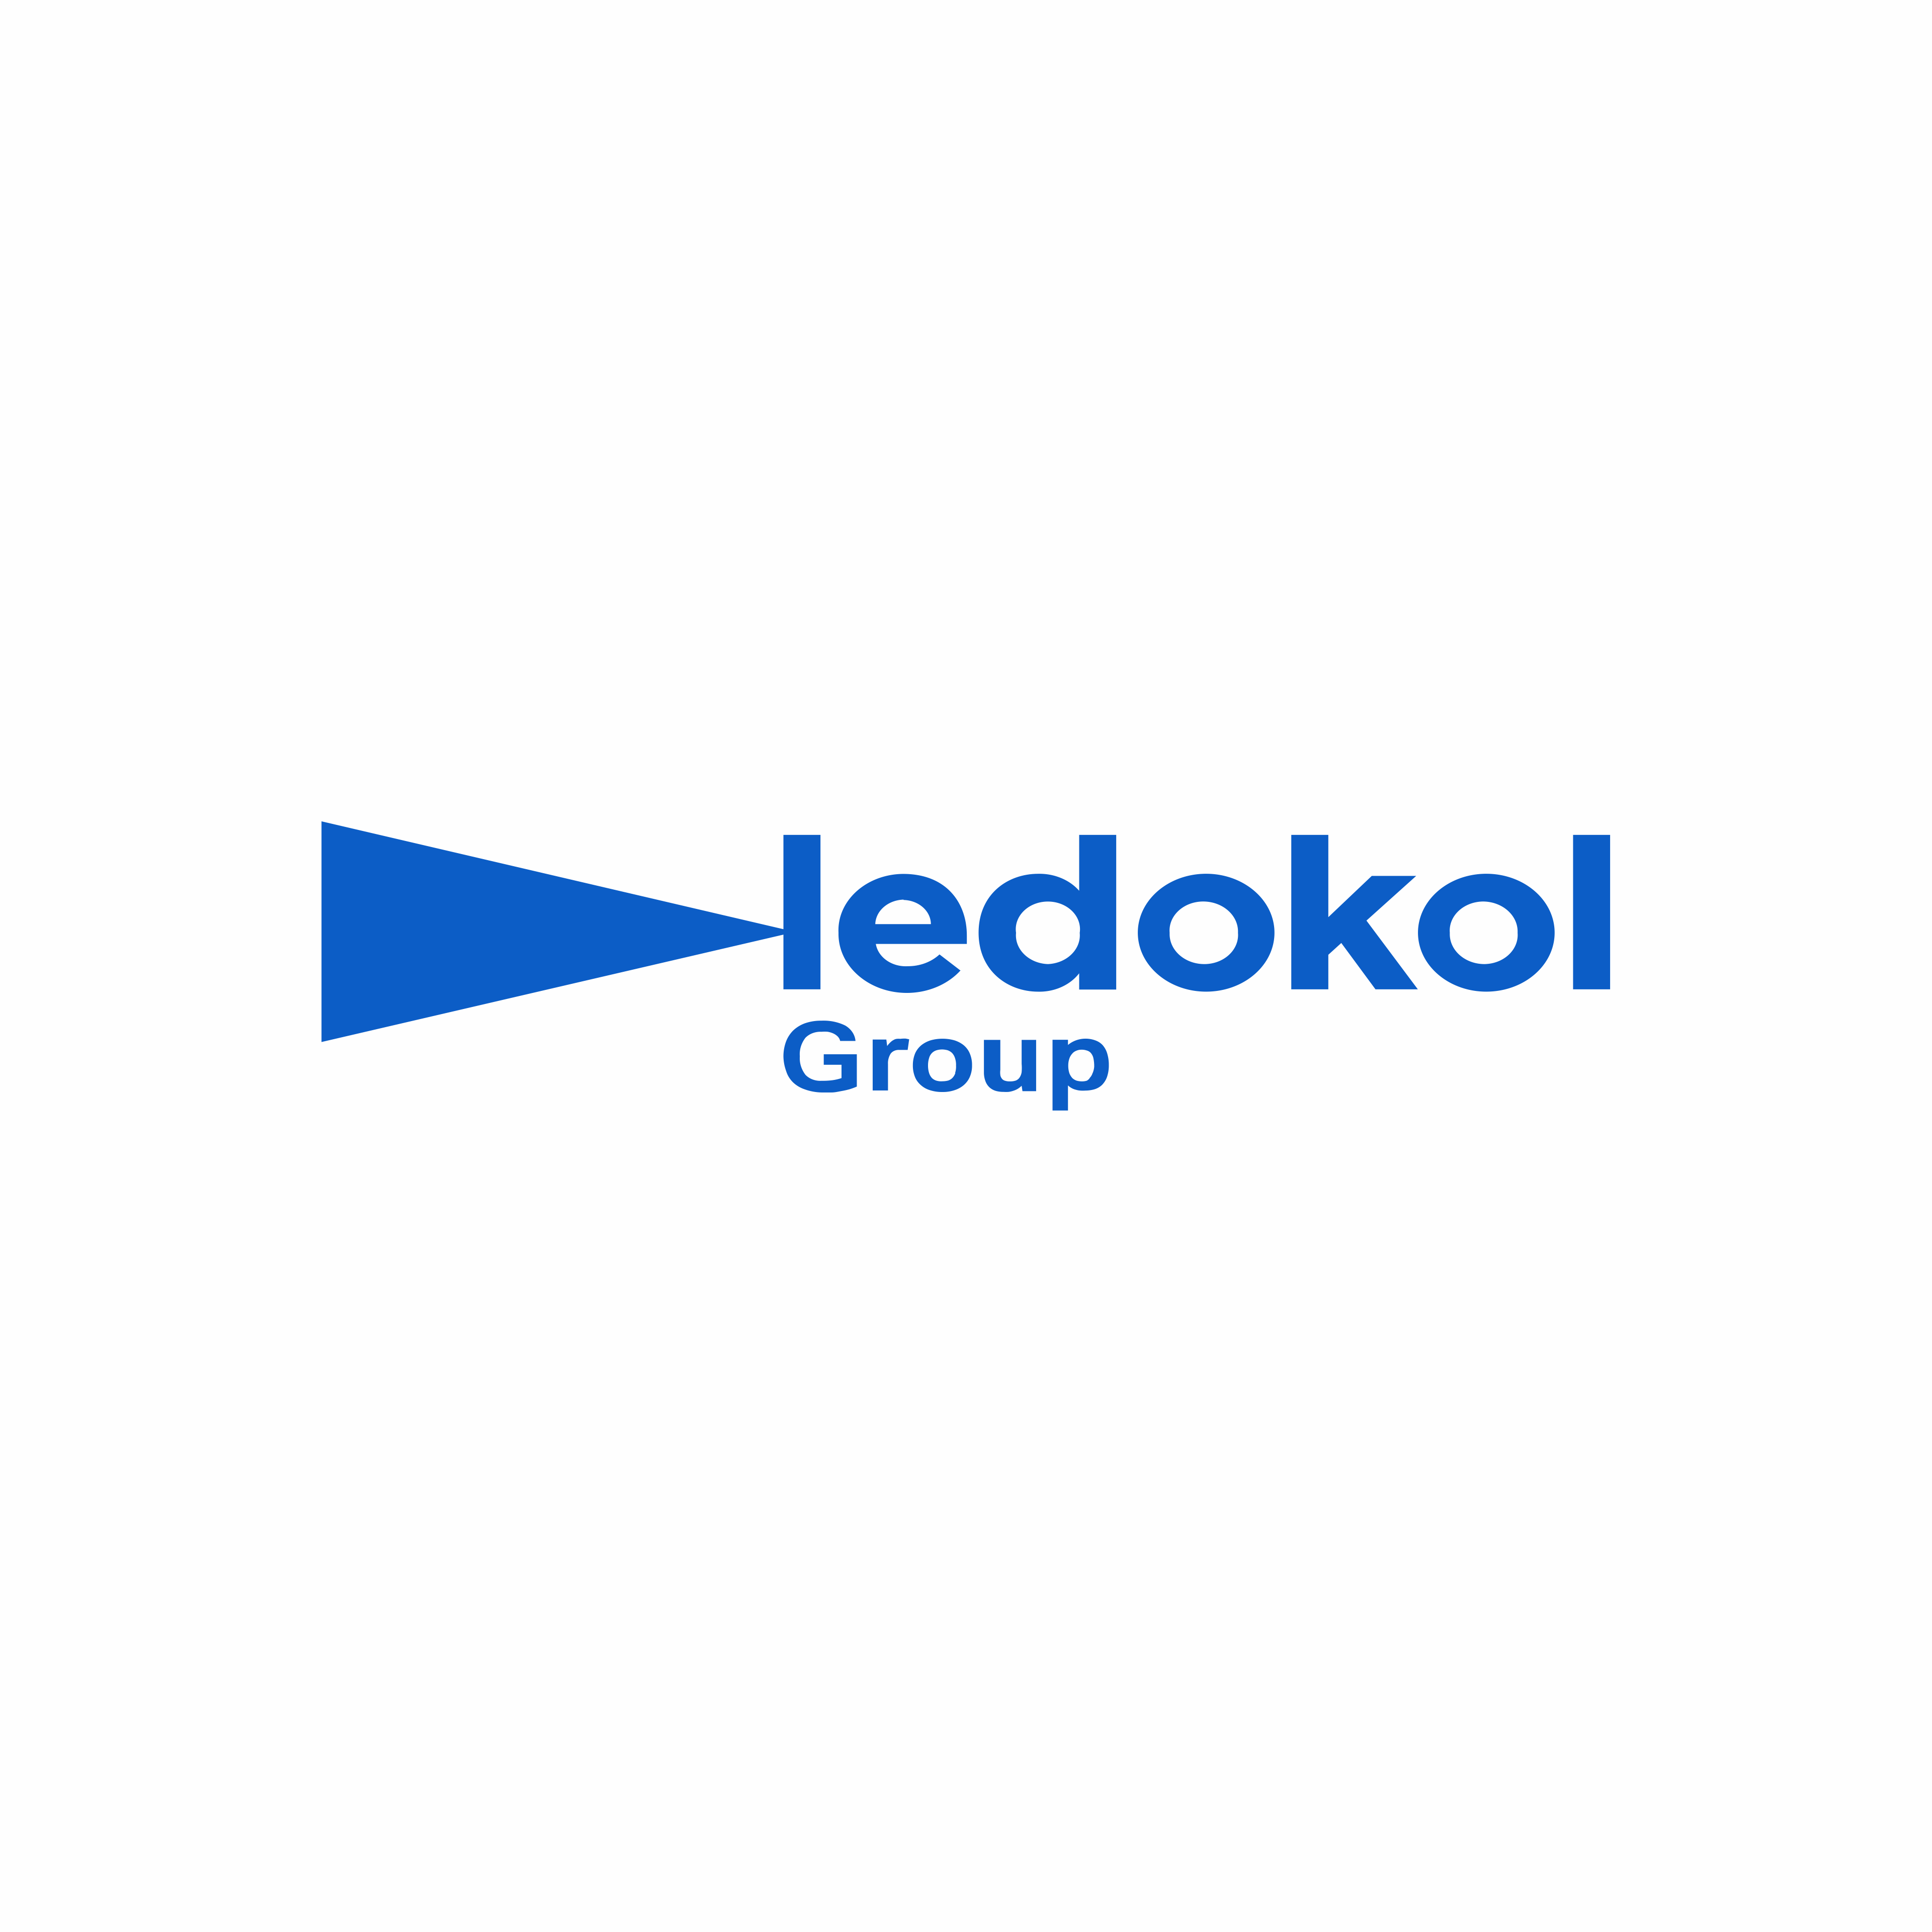 Ledokol Group